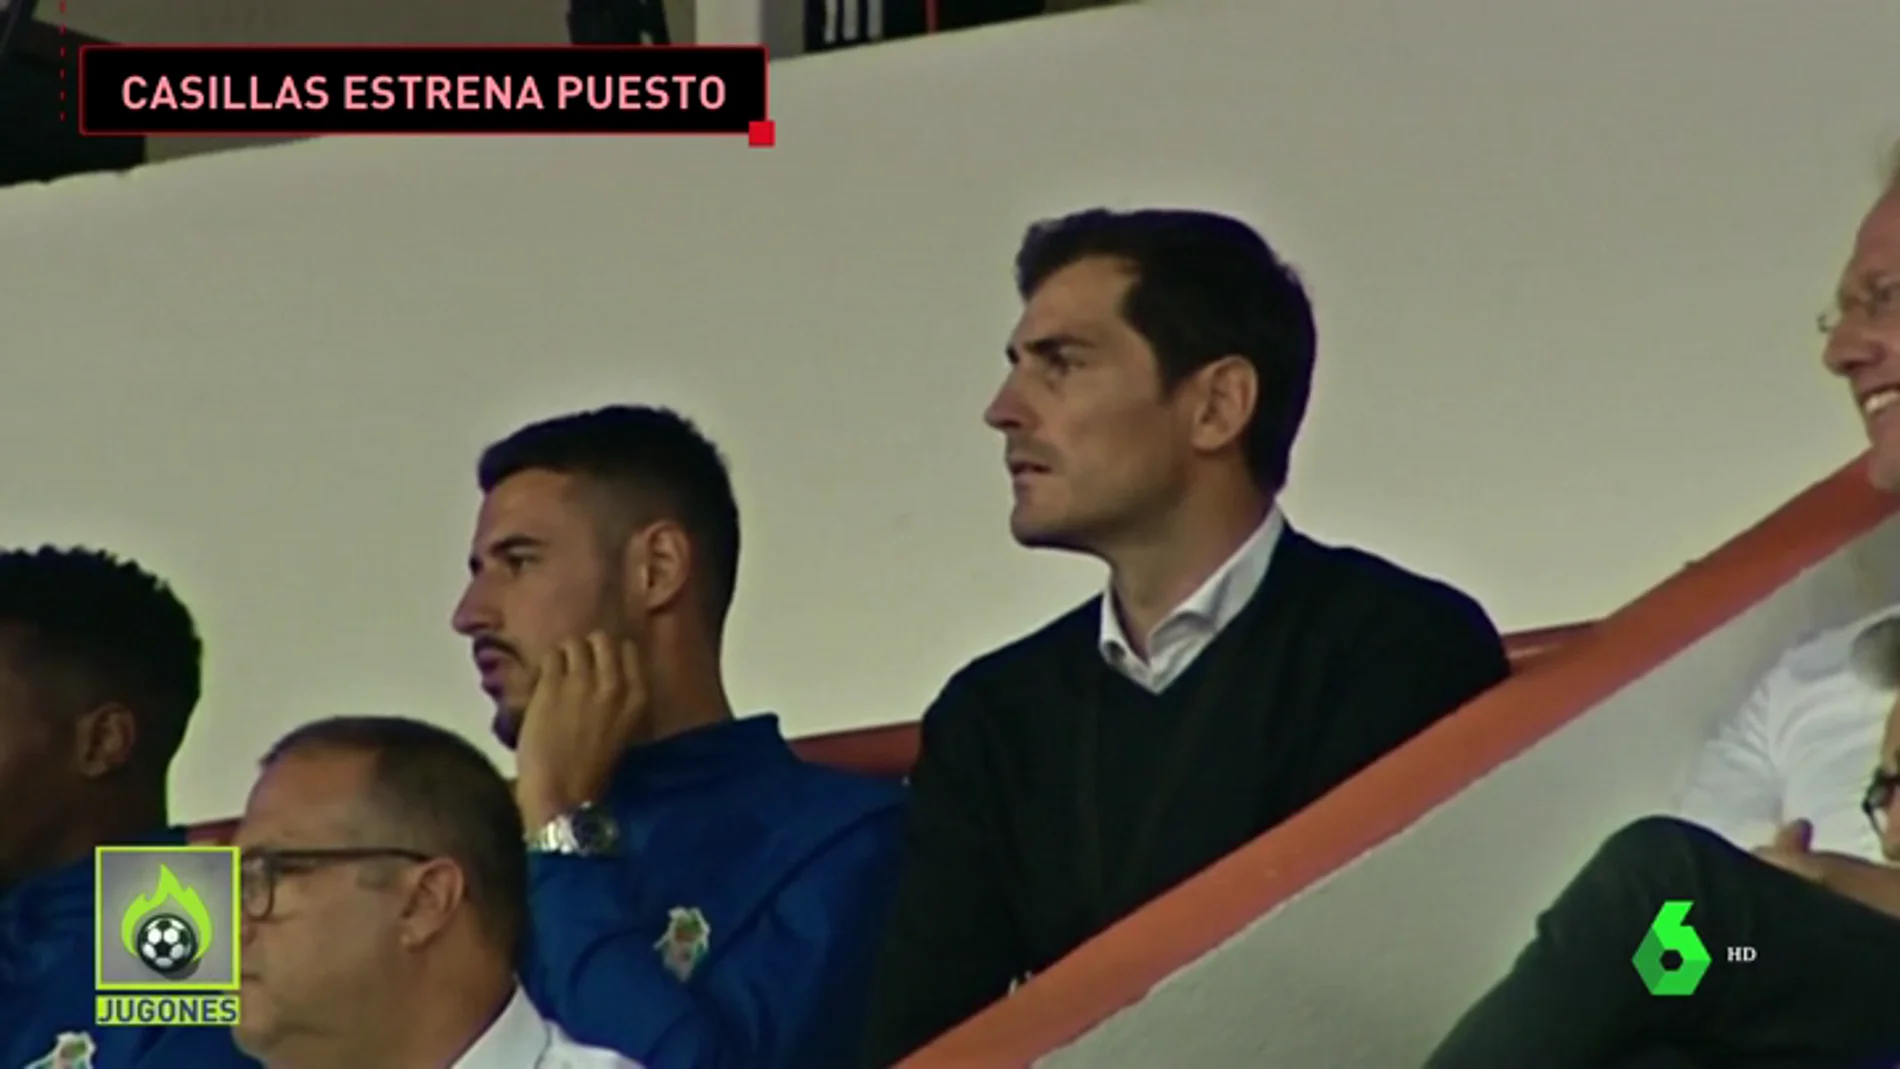 Casillas debuta como miembro del equipo deportivo del Oporto frente al Fulham